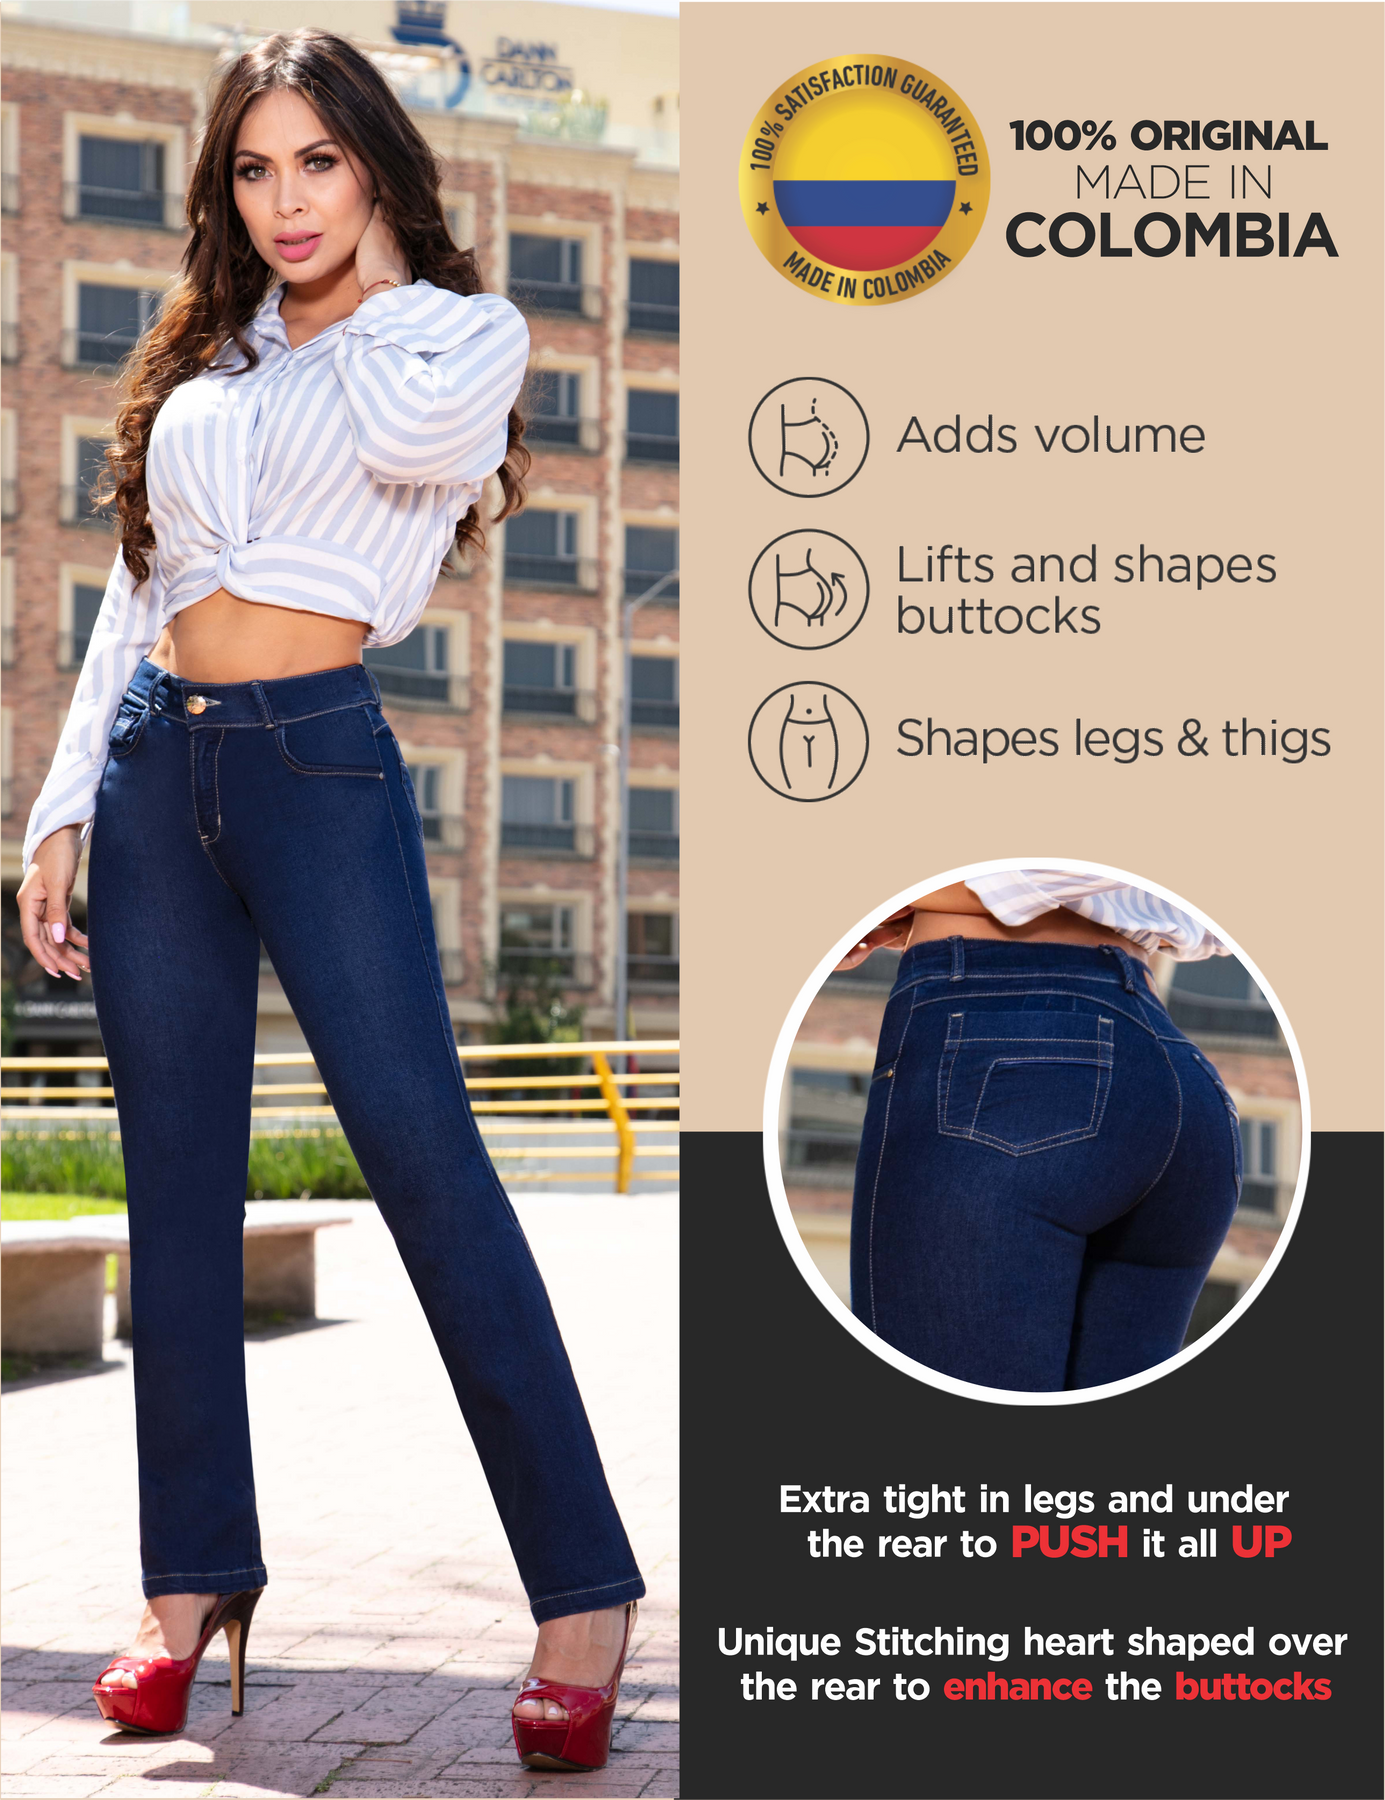 ARANZA Pantalones Colombianos Levanta Cola - Jeans colombianos con